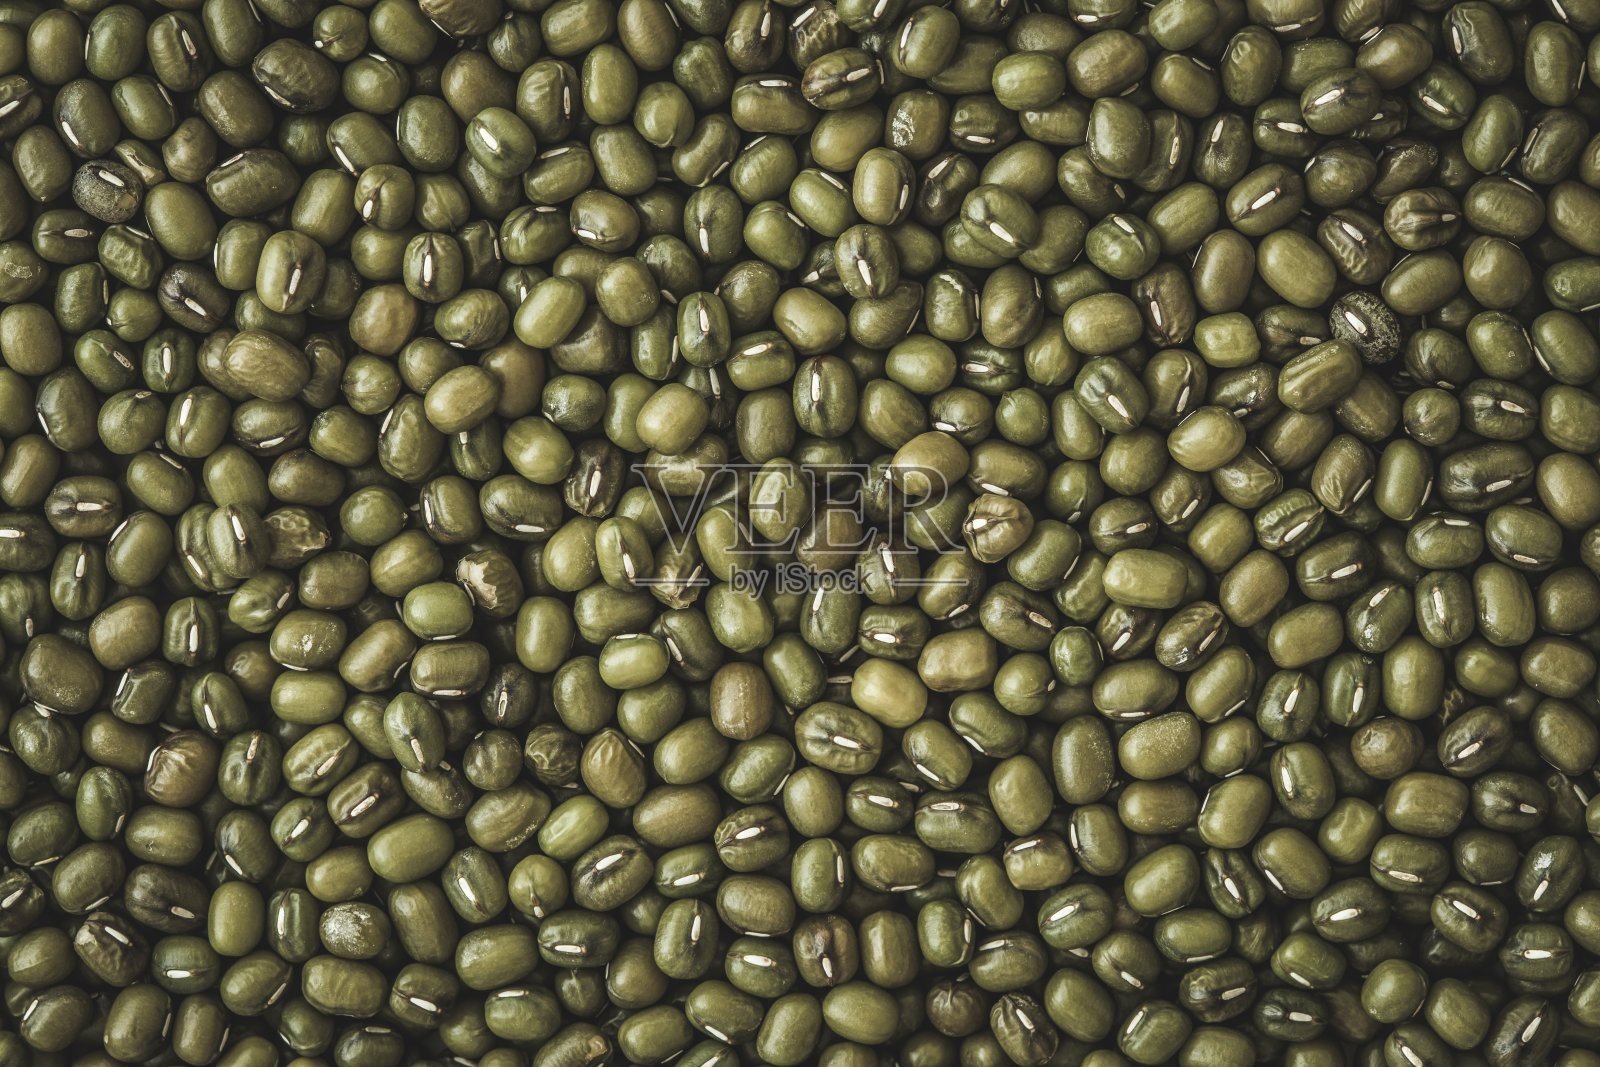 靠近绿色绿豆粒种子的背景照片摄影图片